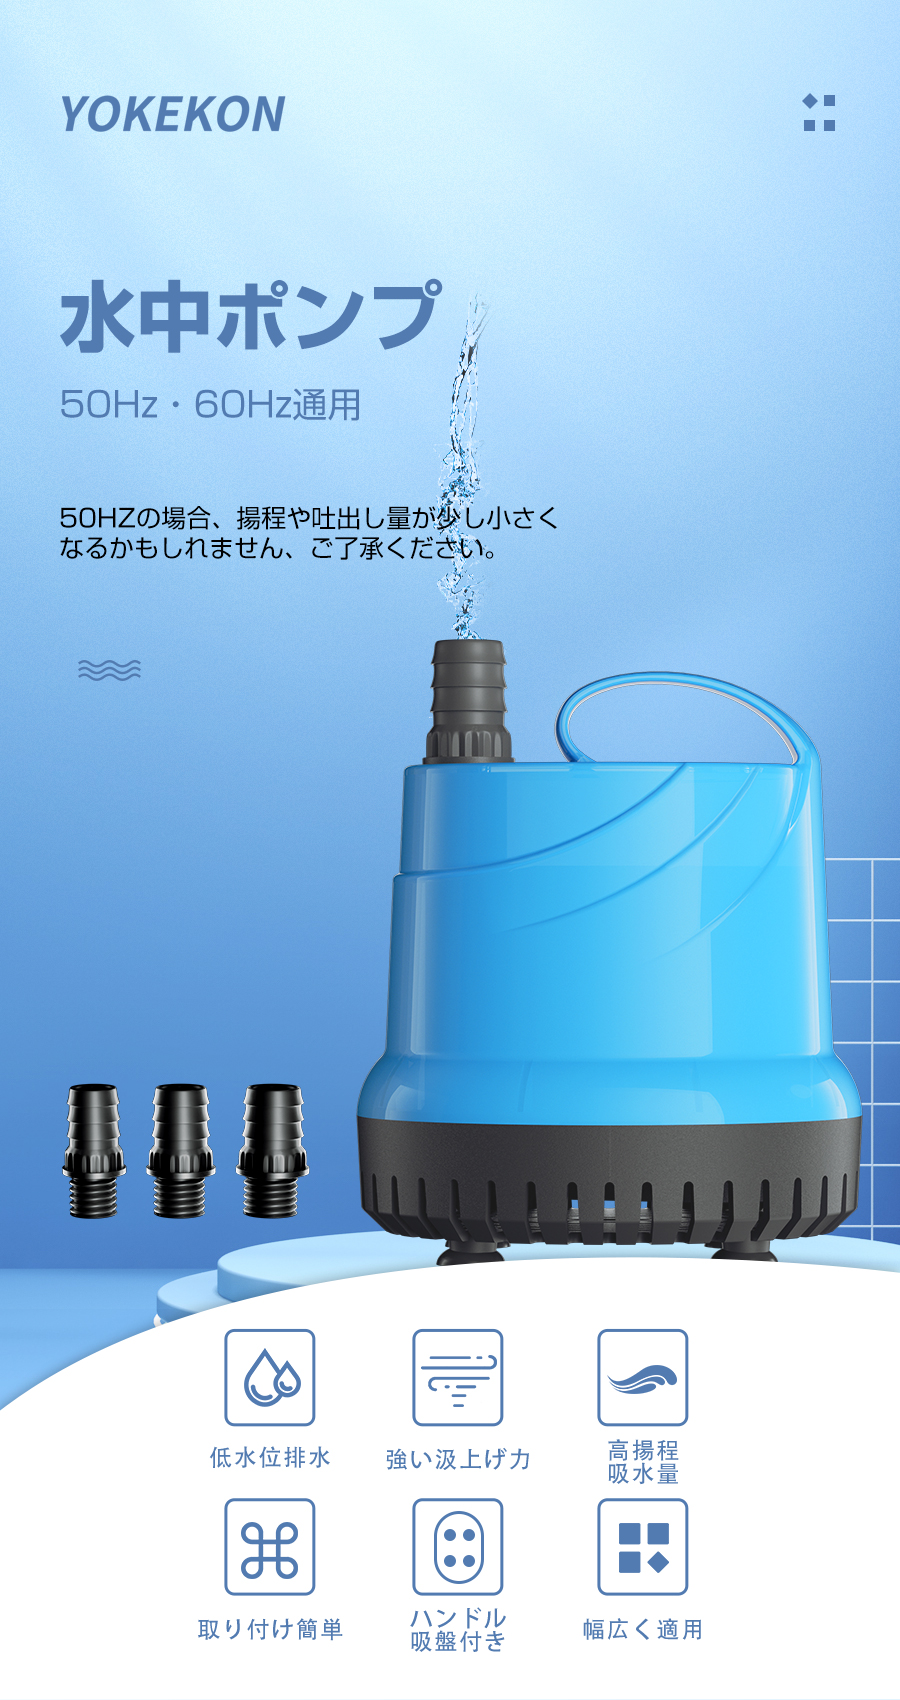 NEWTRY 高圧ポンプ 給水 排水ポンプ ダイヤフラムポンプ 電動ウォーターポンプ 最大揚程110ｍ 160PSI 最大吐出量6-7L m - 2